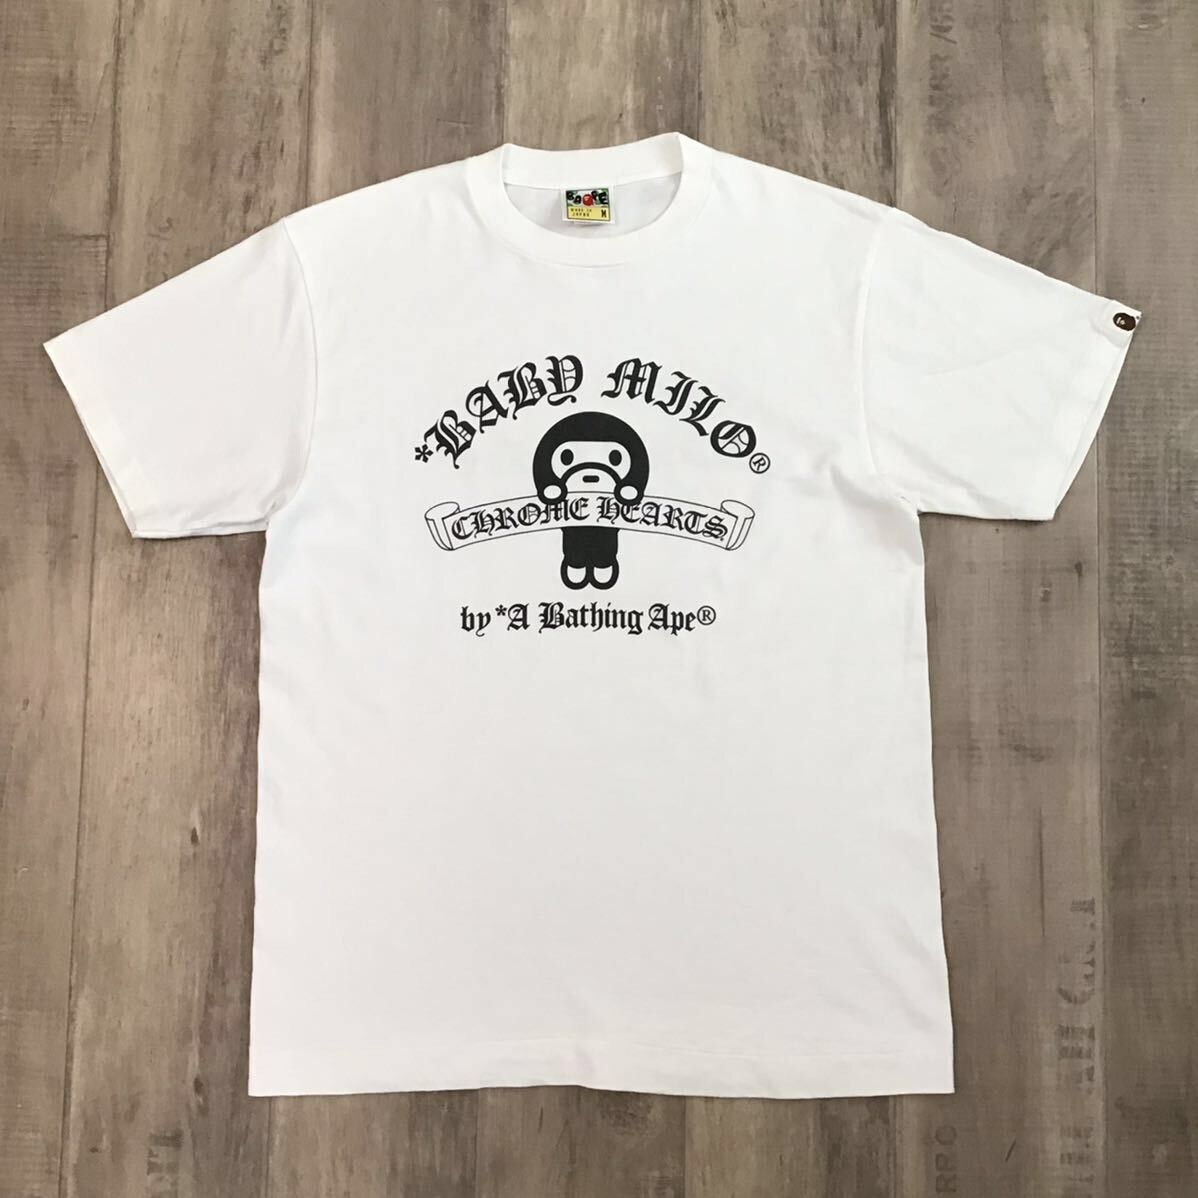 Bape Bape x Chrome Hearts Baby Milo T-shirt a bathing ape NIGO | Grailed